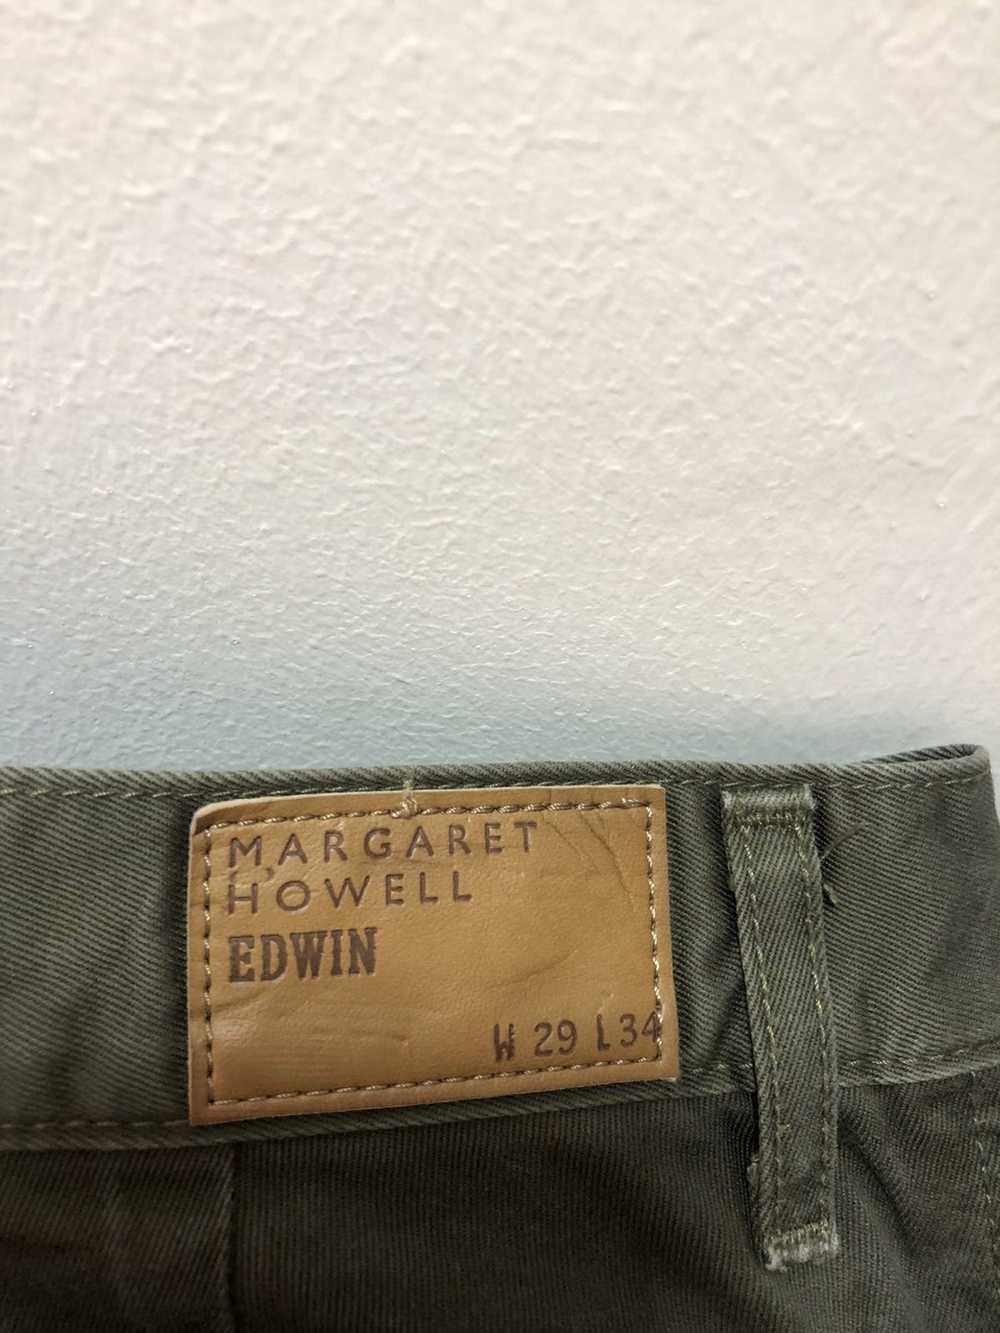 Edwin × Margaret Howell EDWIN MARGARET HOWELL Cas… - image 4